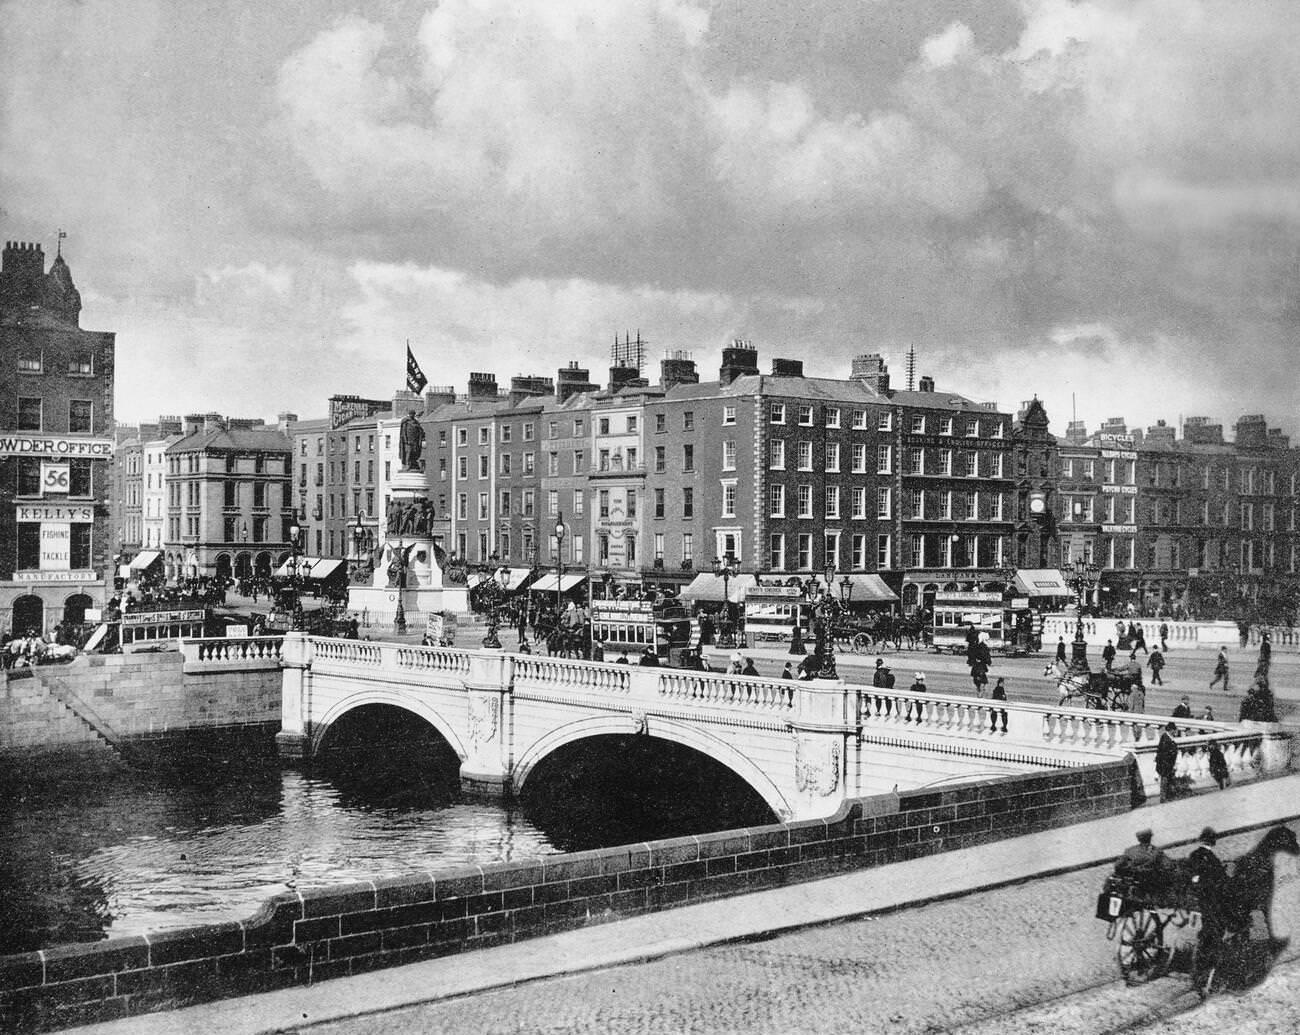 O'Connell Bridge crossing the River Liffey in Dublin.